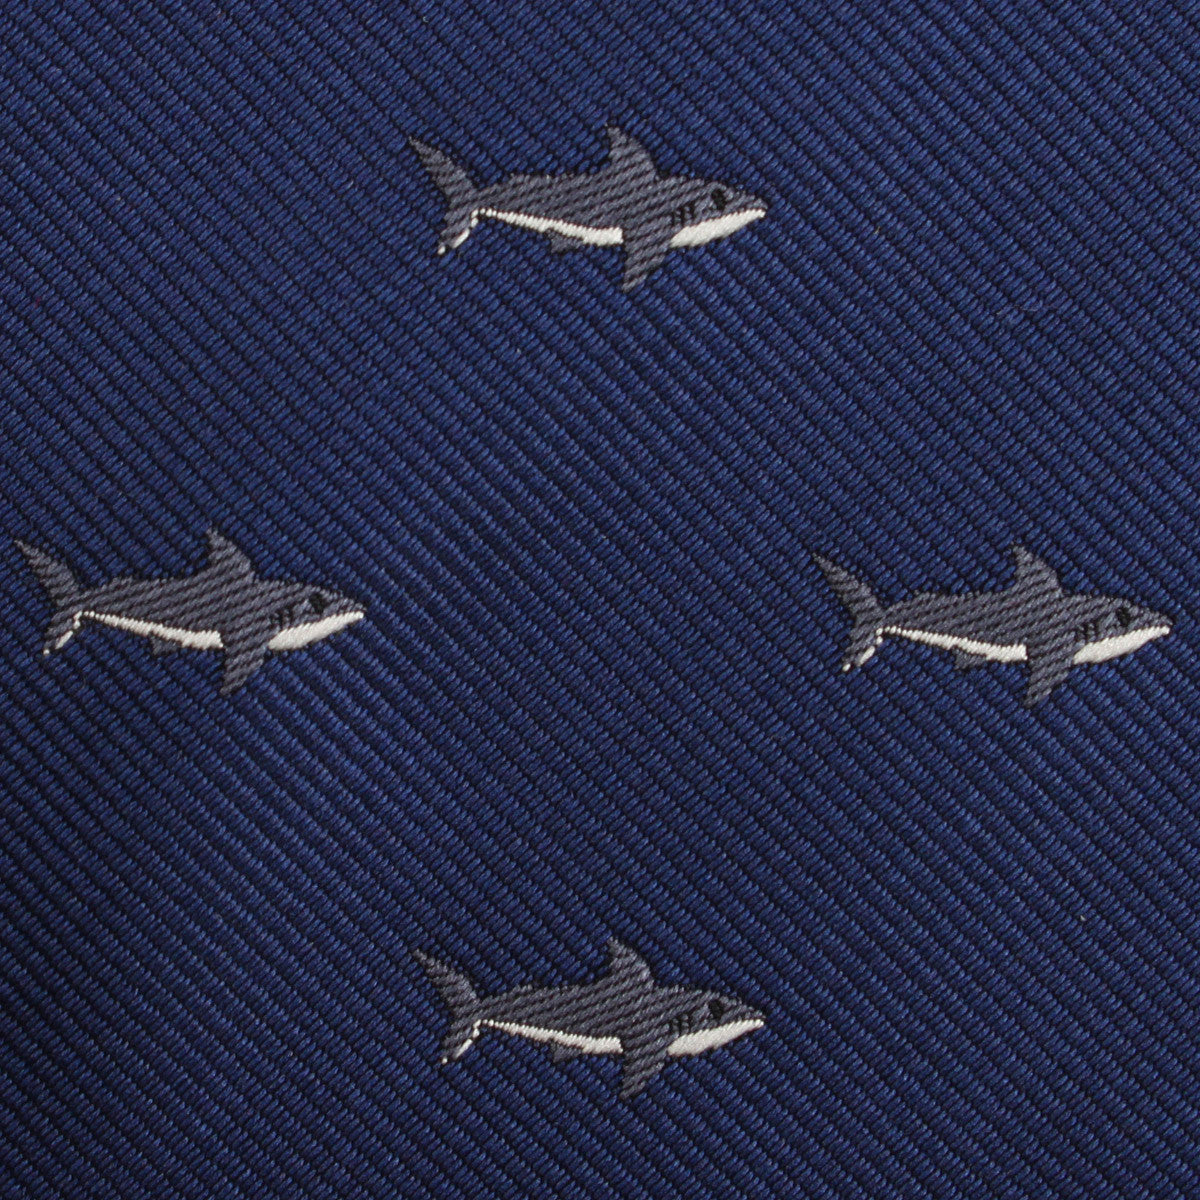 Shark Fabric Kids Diamond Bow Tie